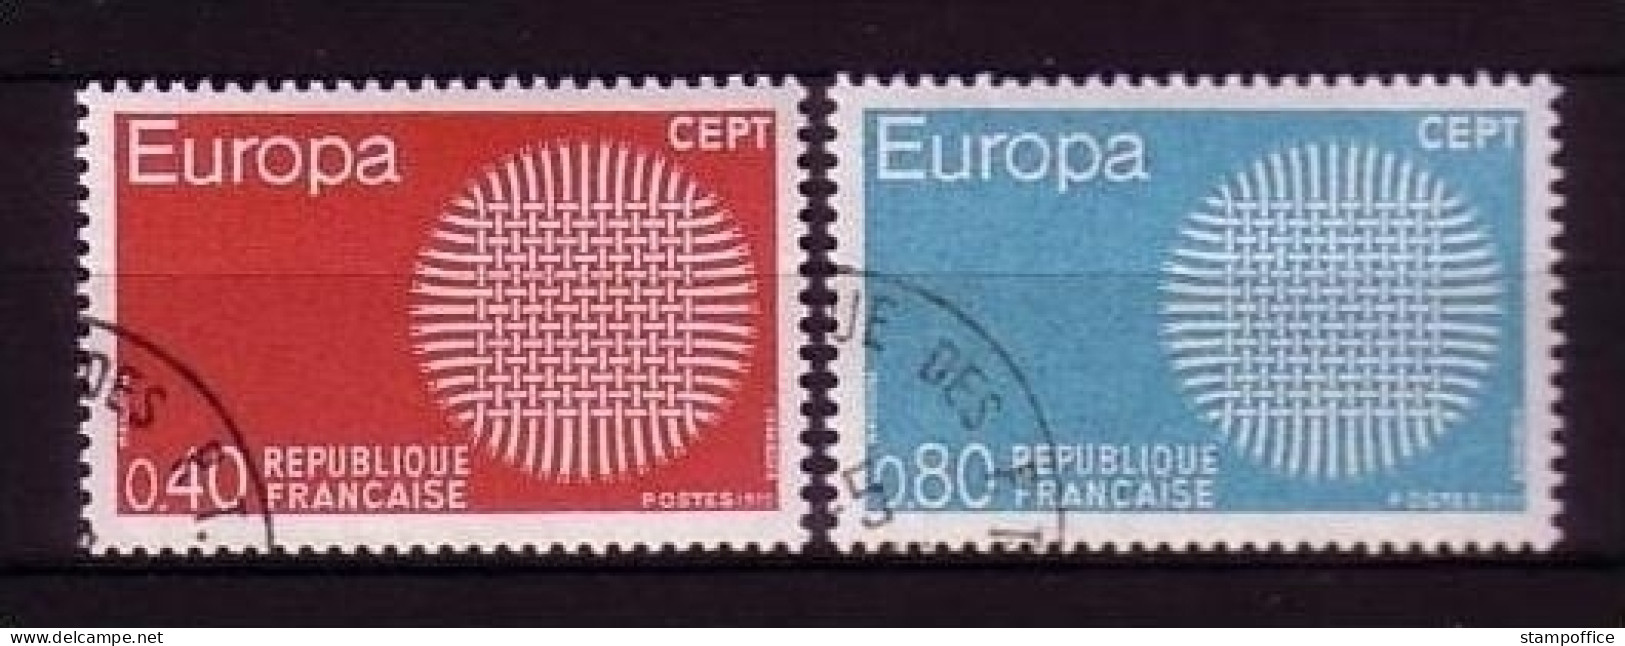 FRANKREICH MI-NR. 1710-1711 O EUROPA 1970 SONNENSYMBOL - 1970